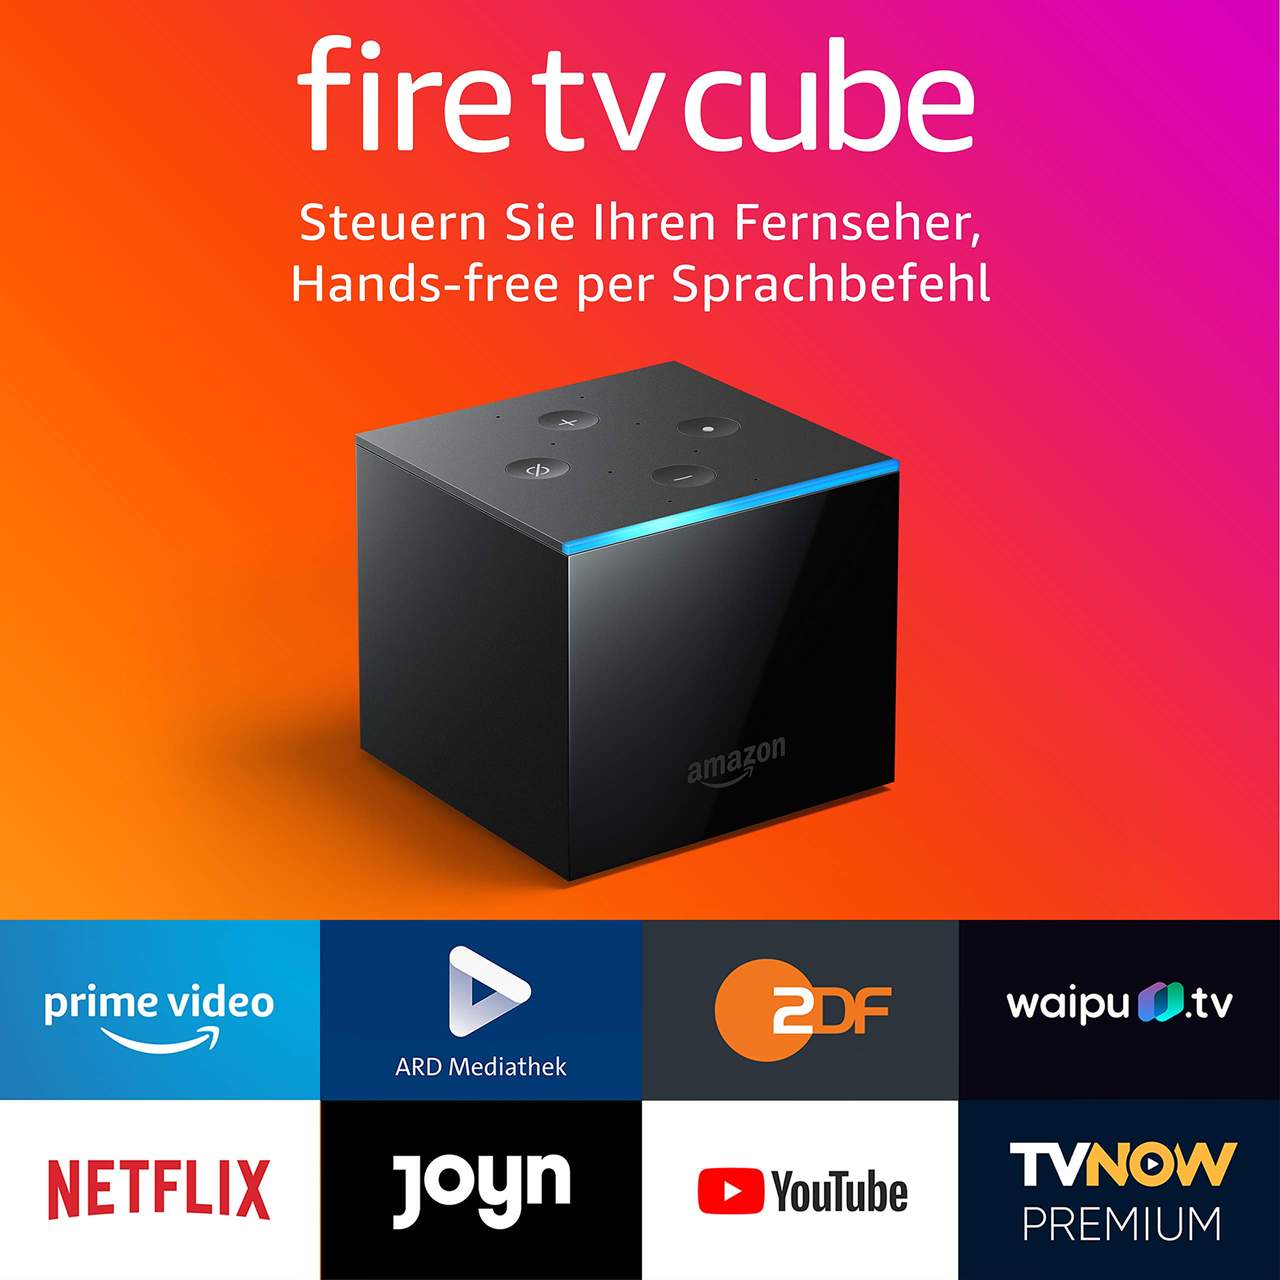 Der neue Fire TV Cube│Hands-free